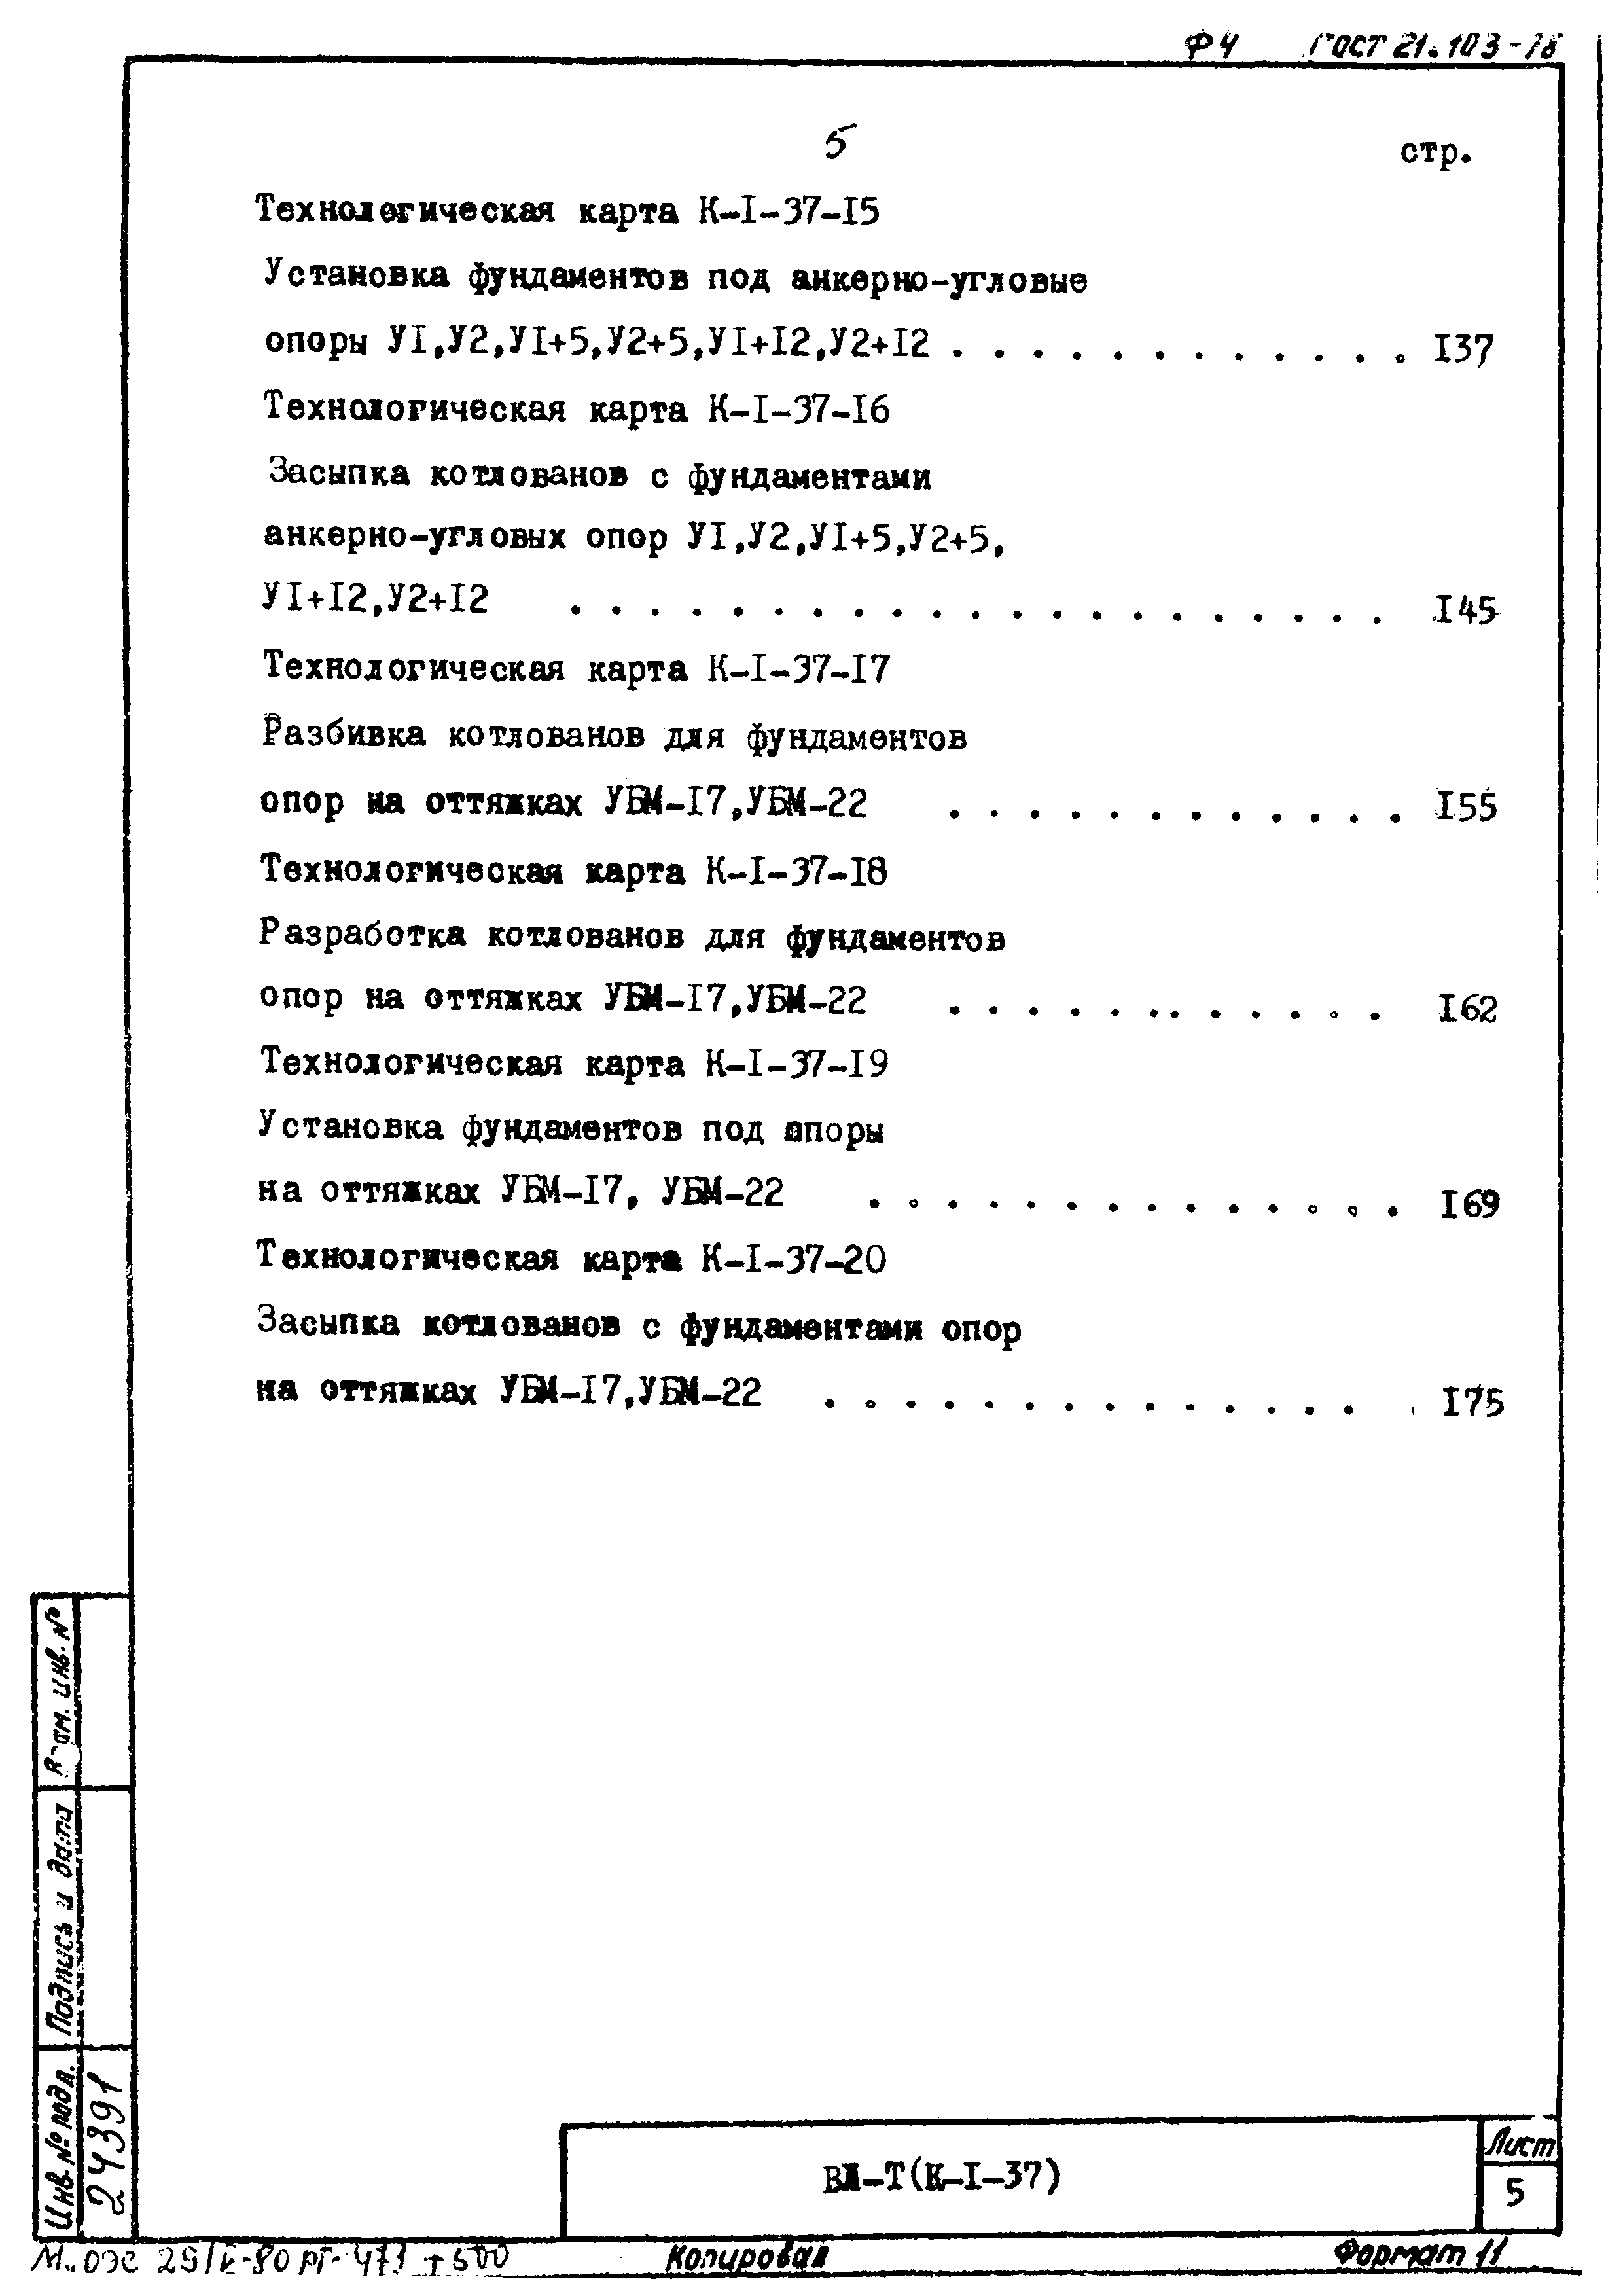 ТК К-I-37-11